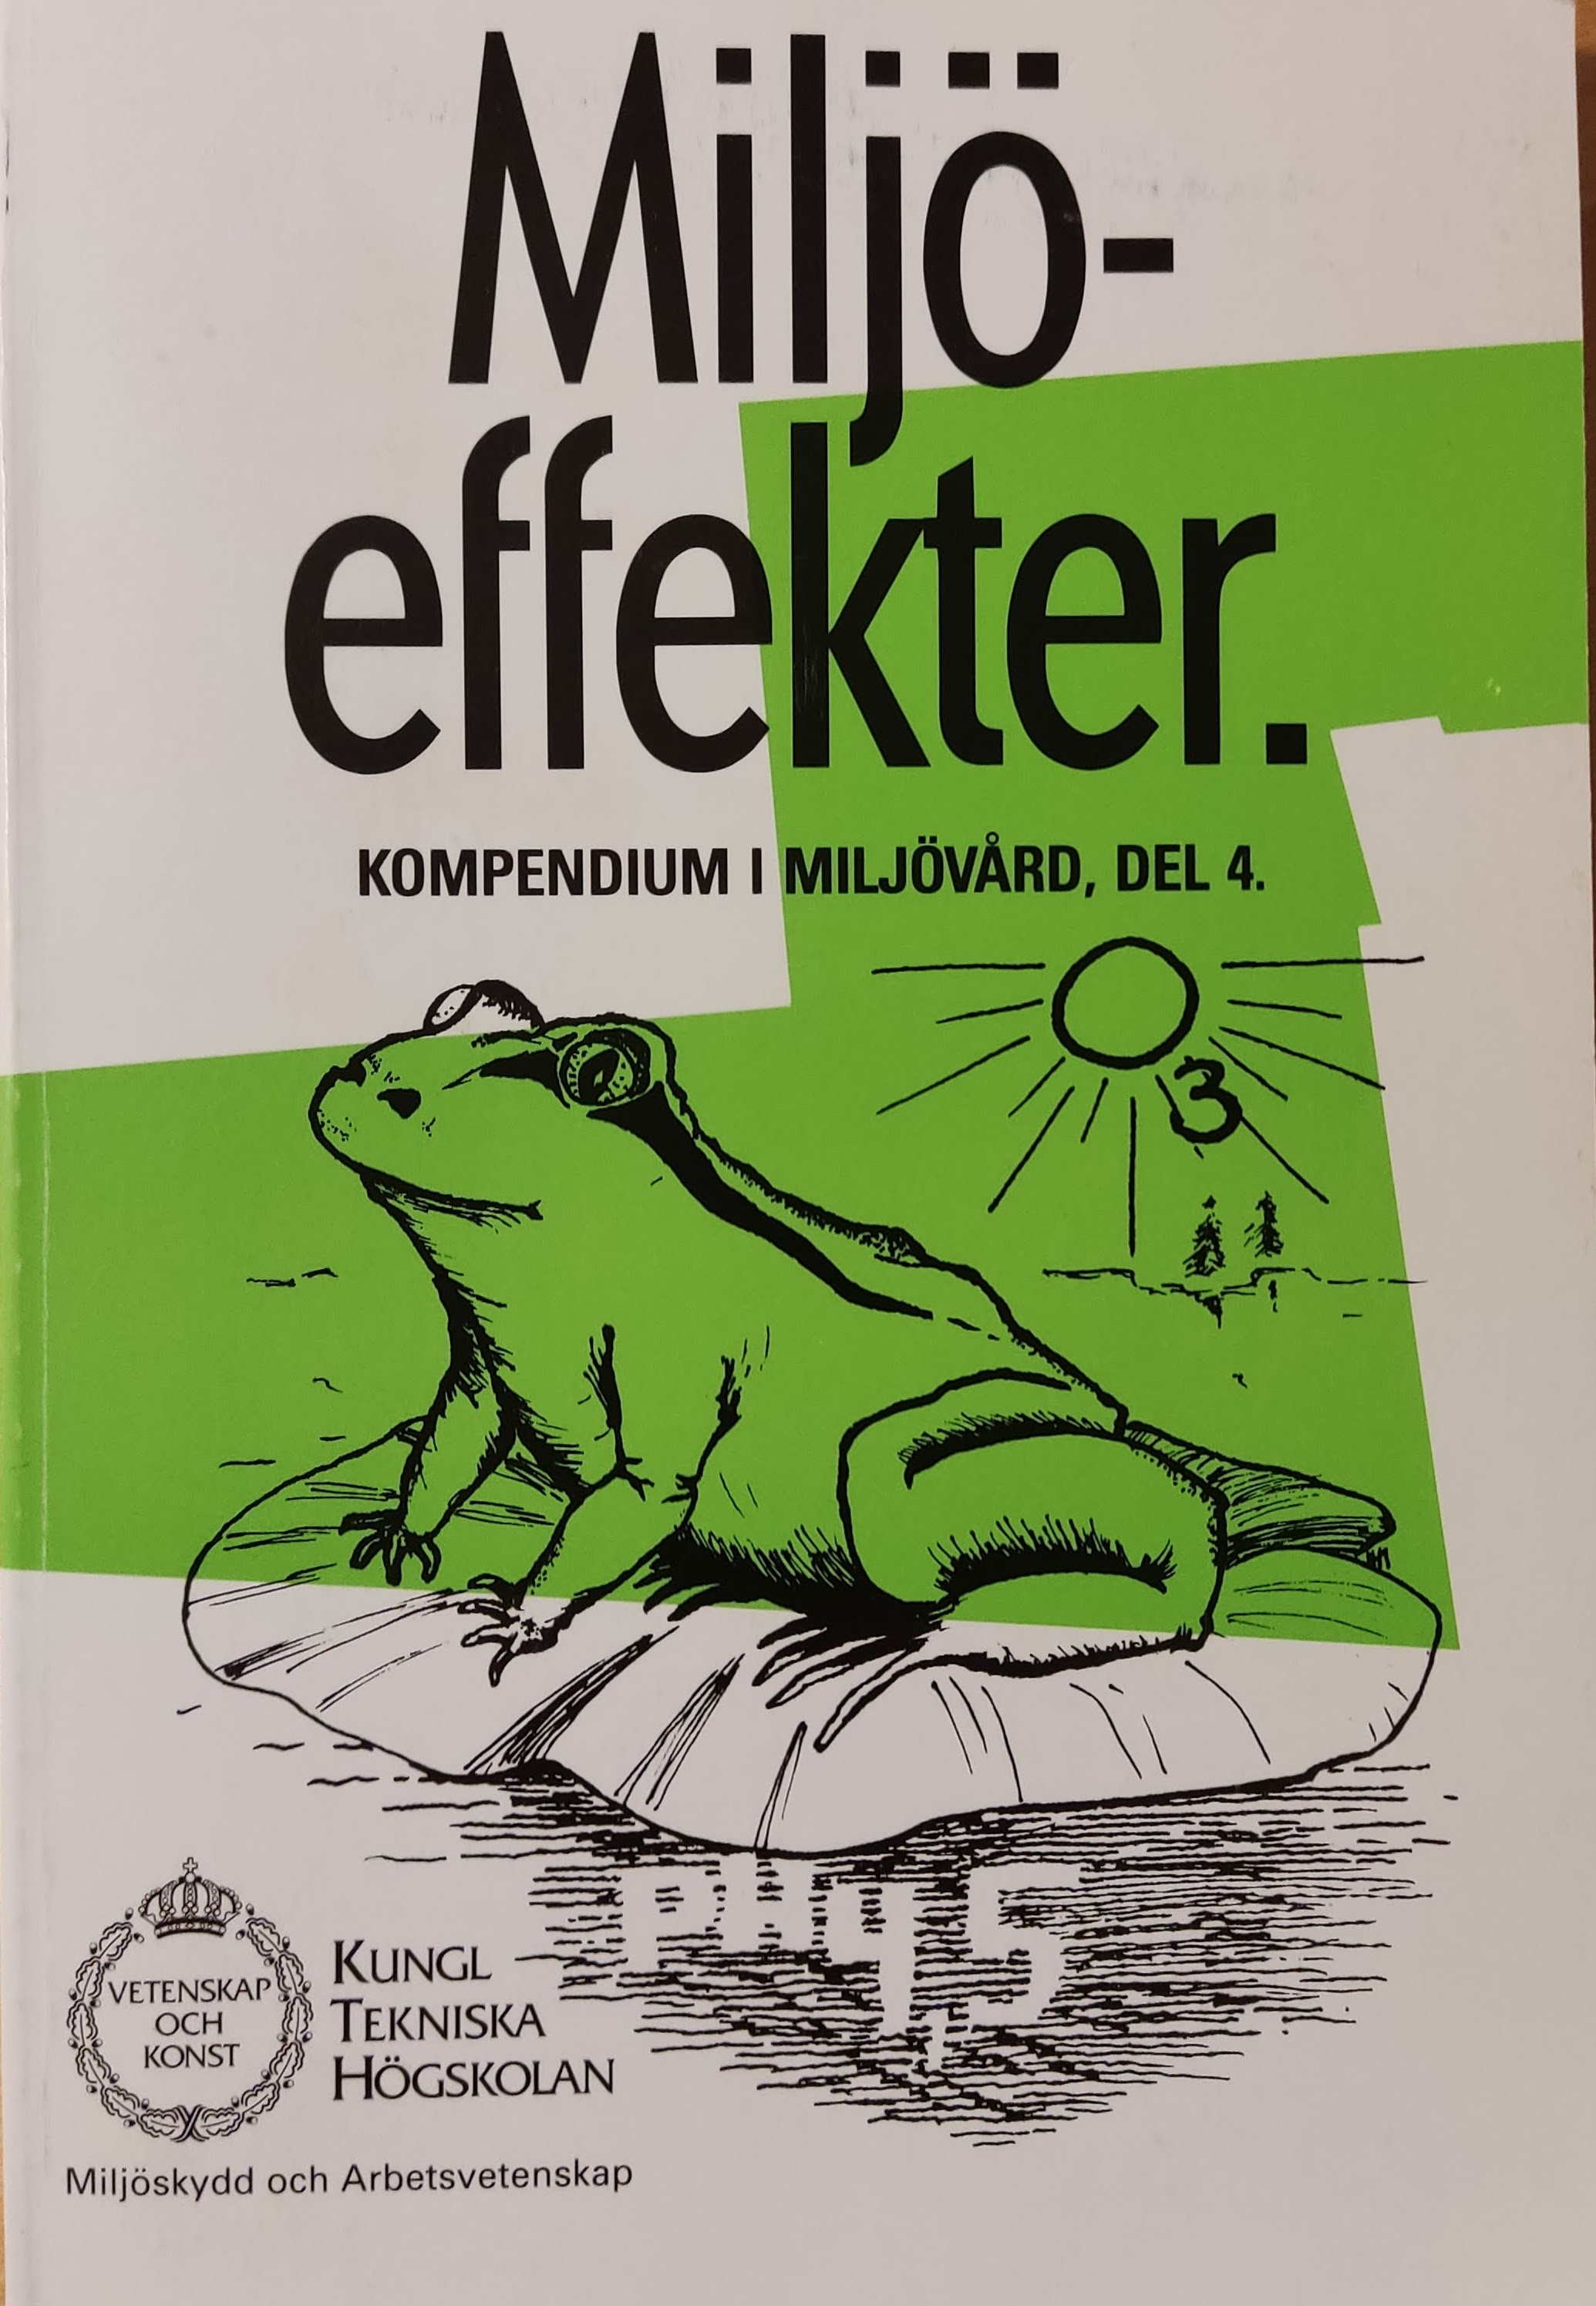 Kompendium i miljövård; Per Olof Persson, Tekniska högskolan i Stockholm. Miljövårdscentrum; 1996